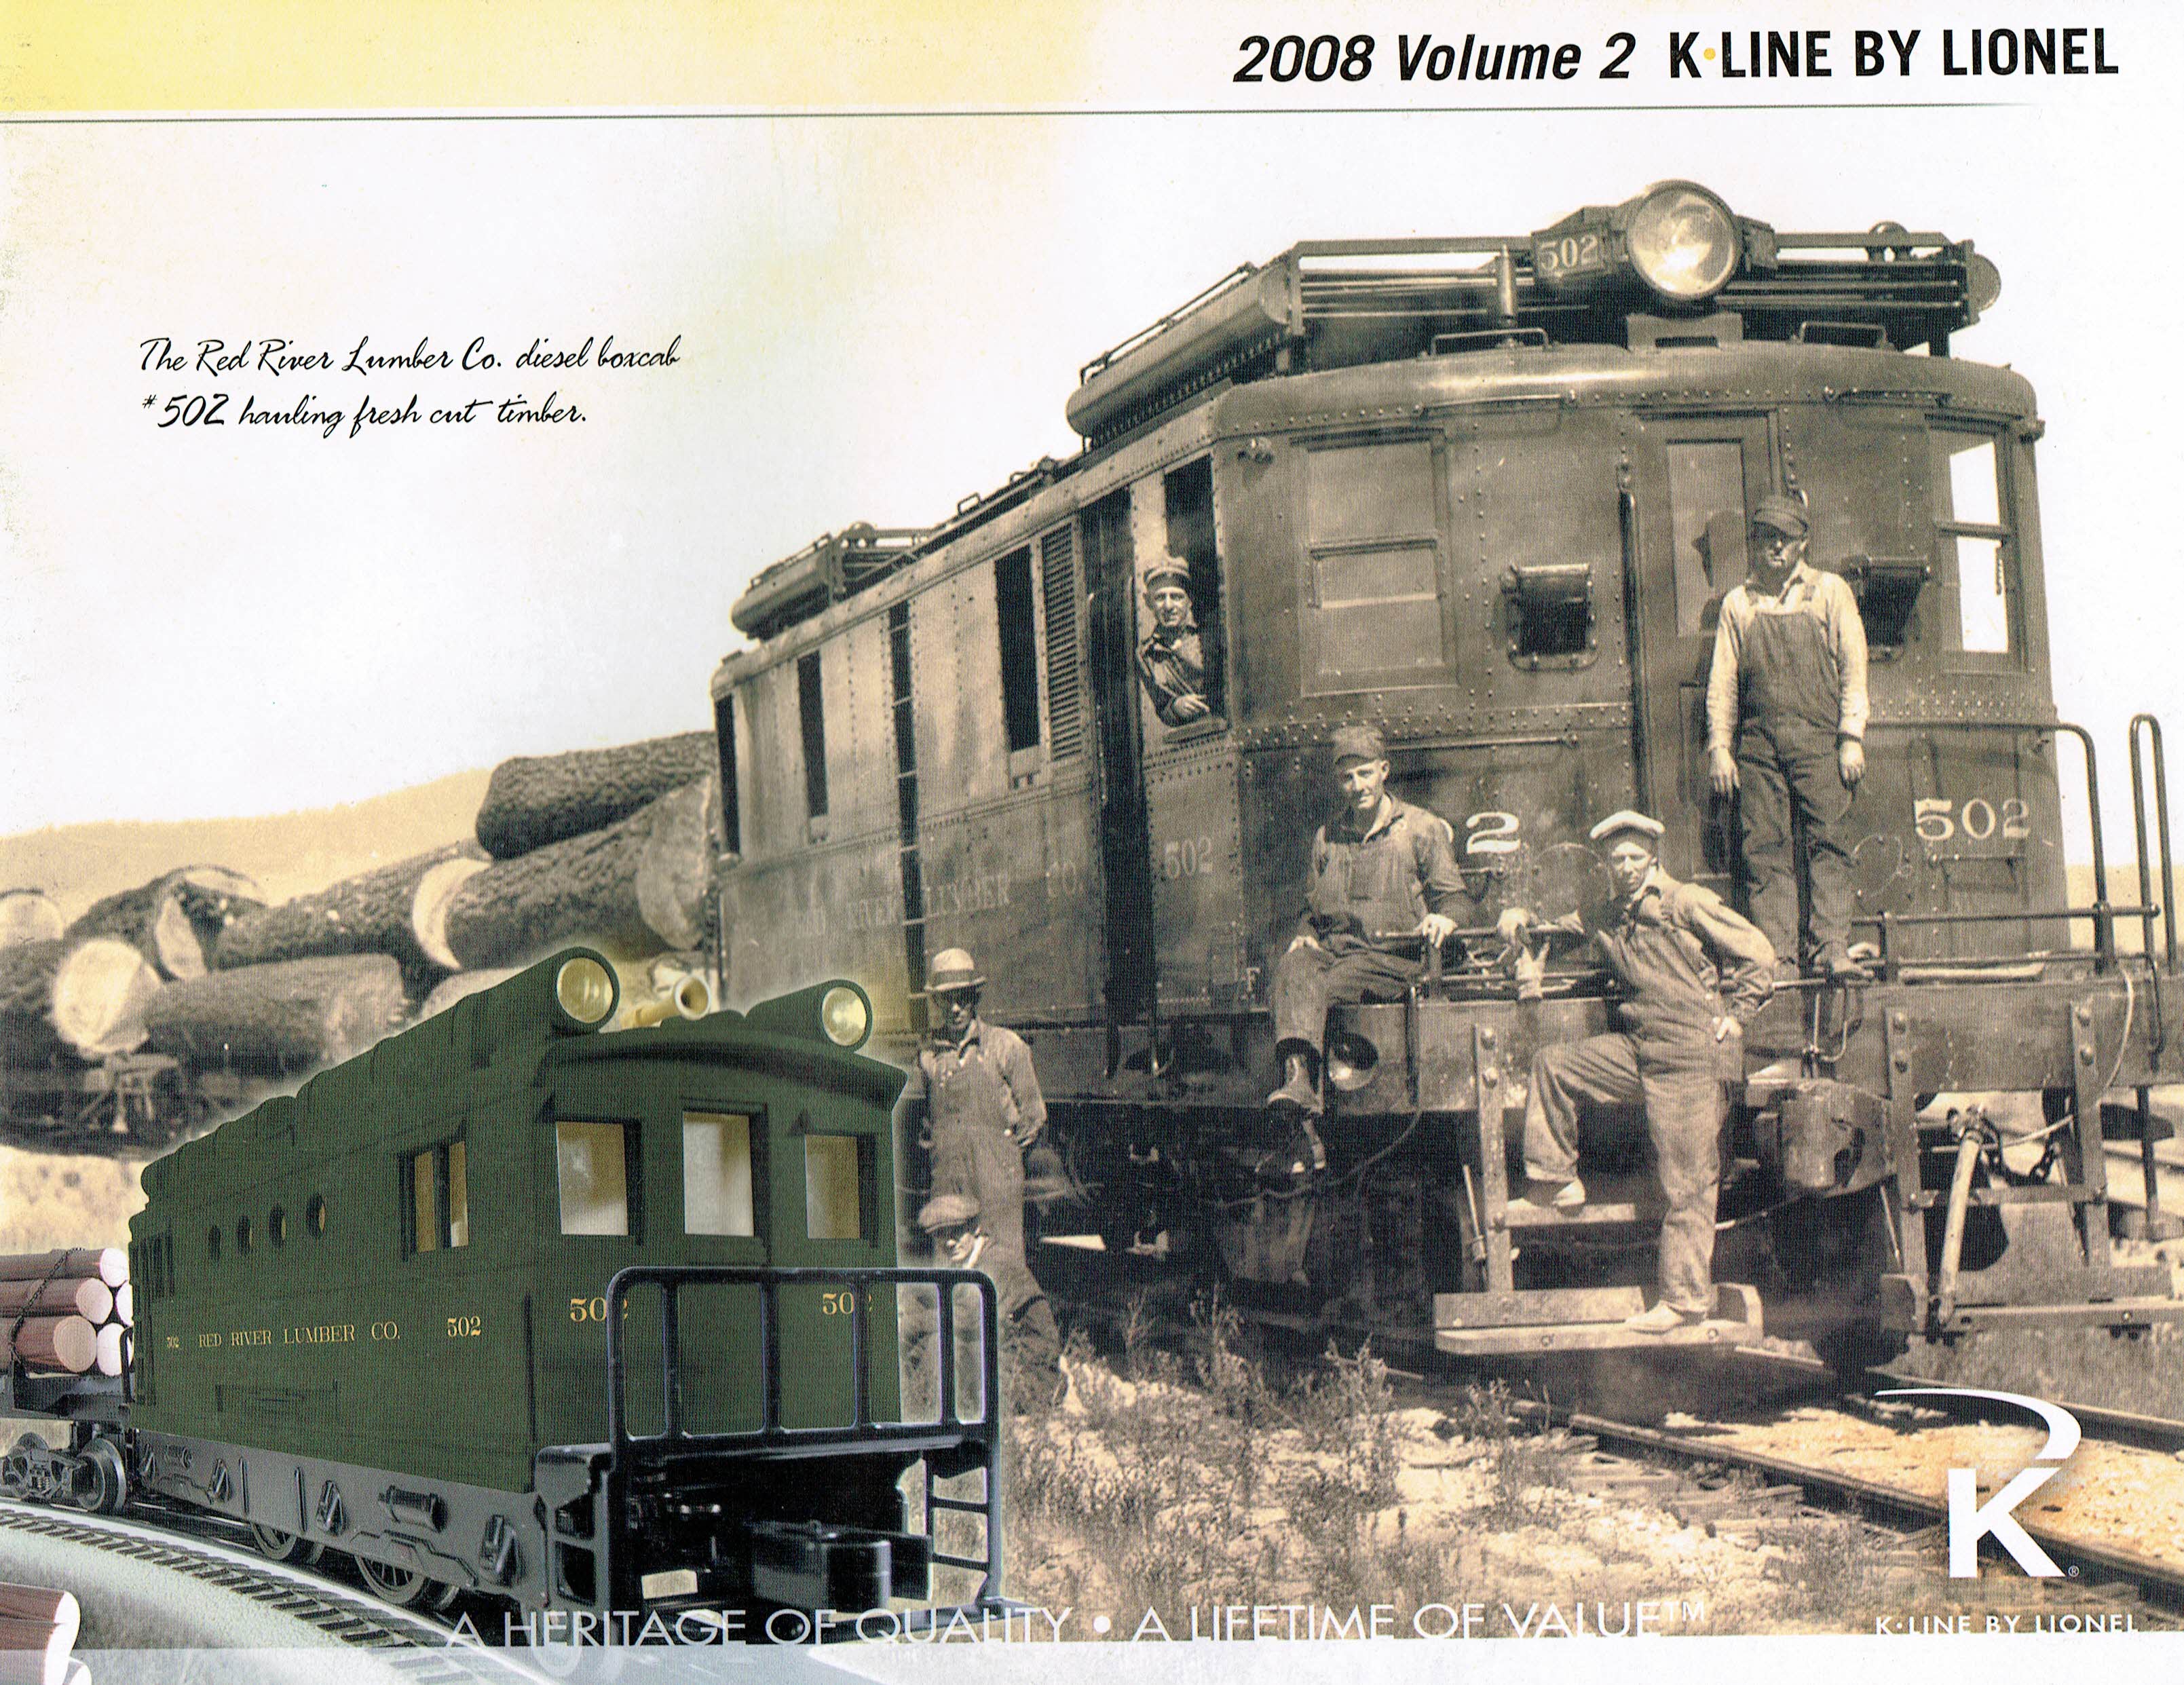 K-Line by Lionel 2008 Volume 2 Catalog image